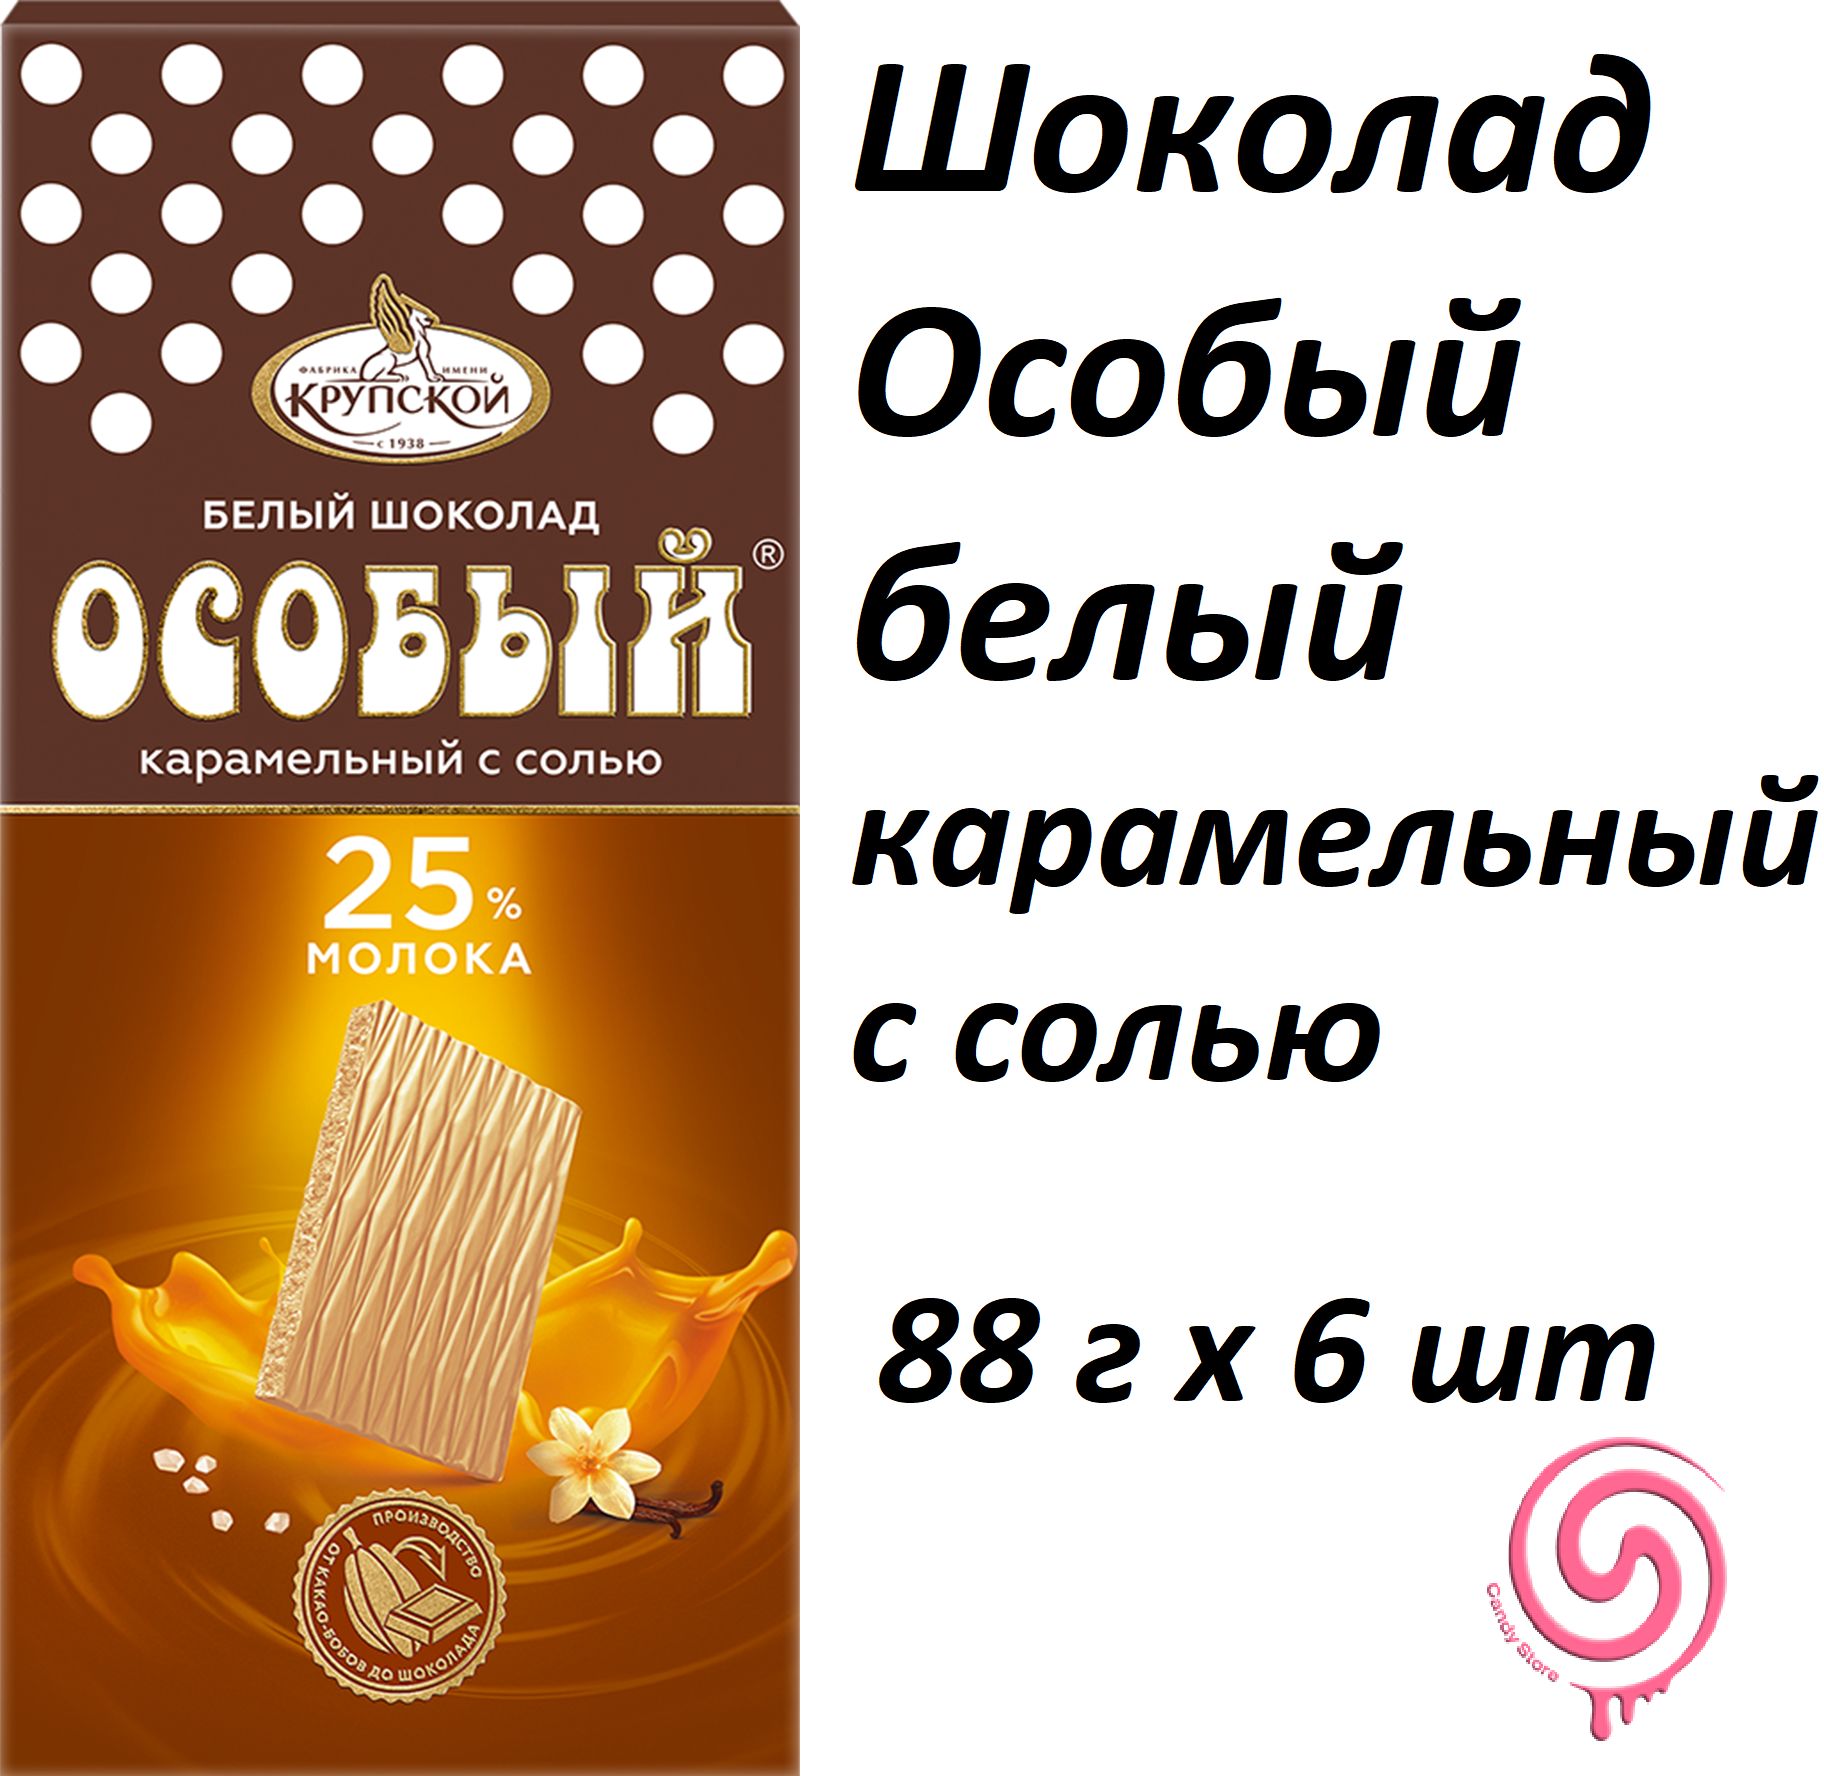 ШоколадОсобыйбелыйкарамельныйссолью88г(комплектиз6штук)/КфКрупской